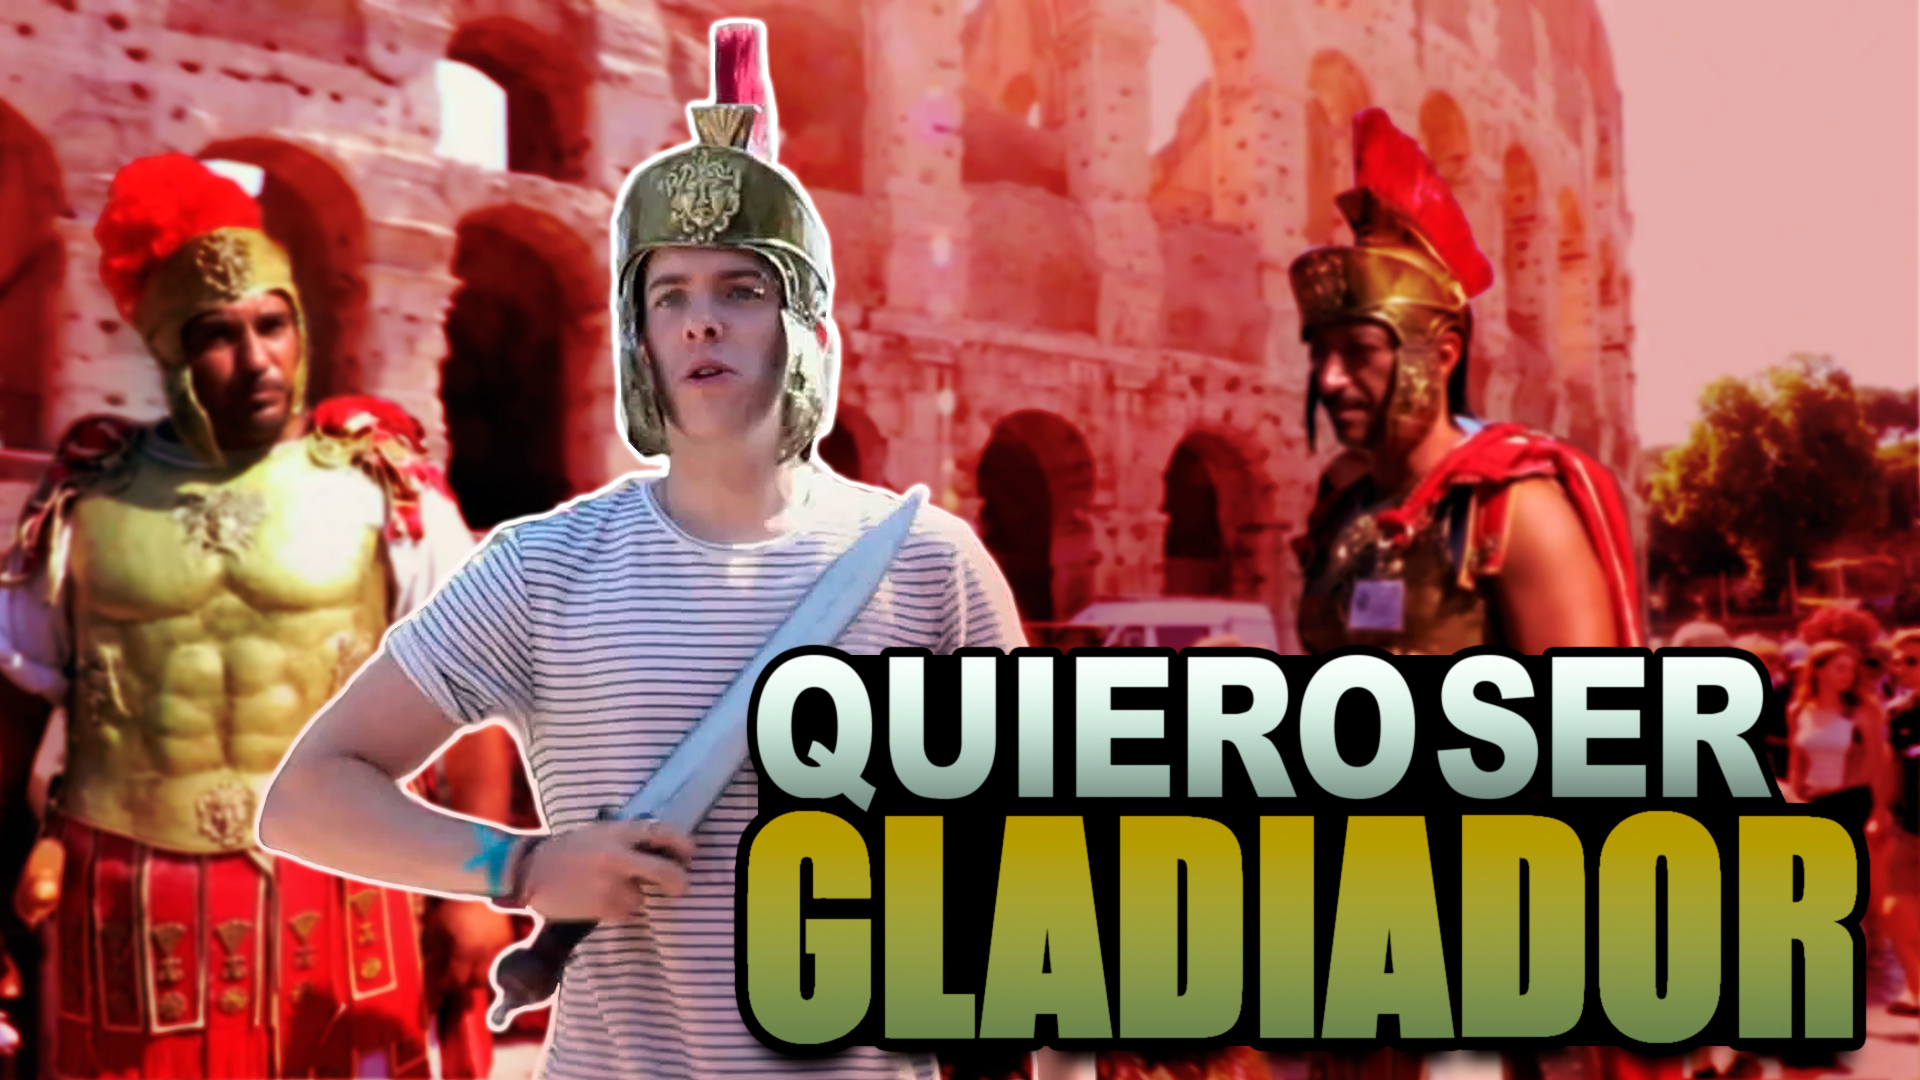 Temporada 1  Quiero ser gladiator